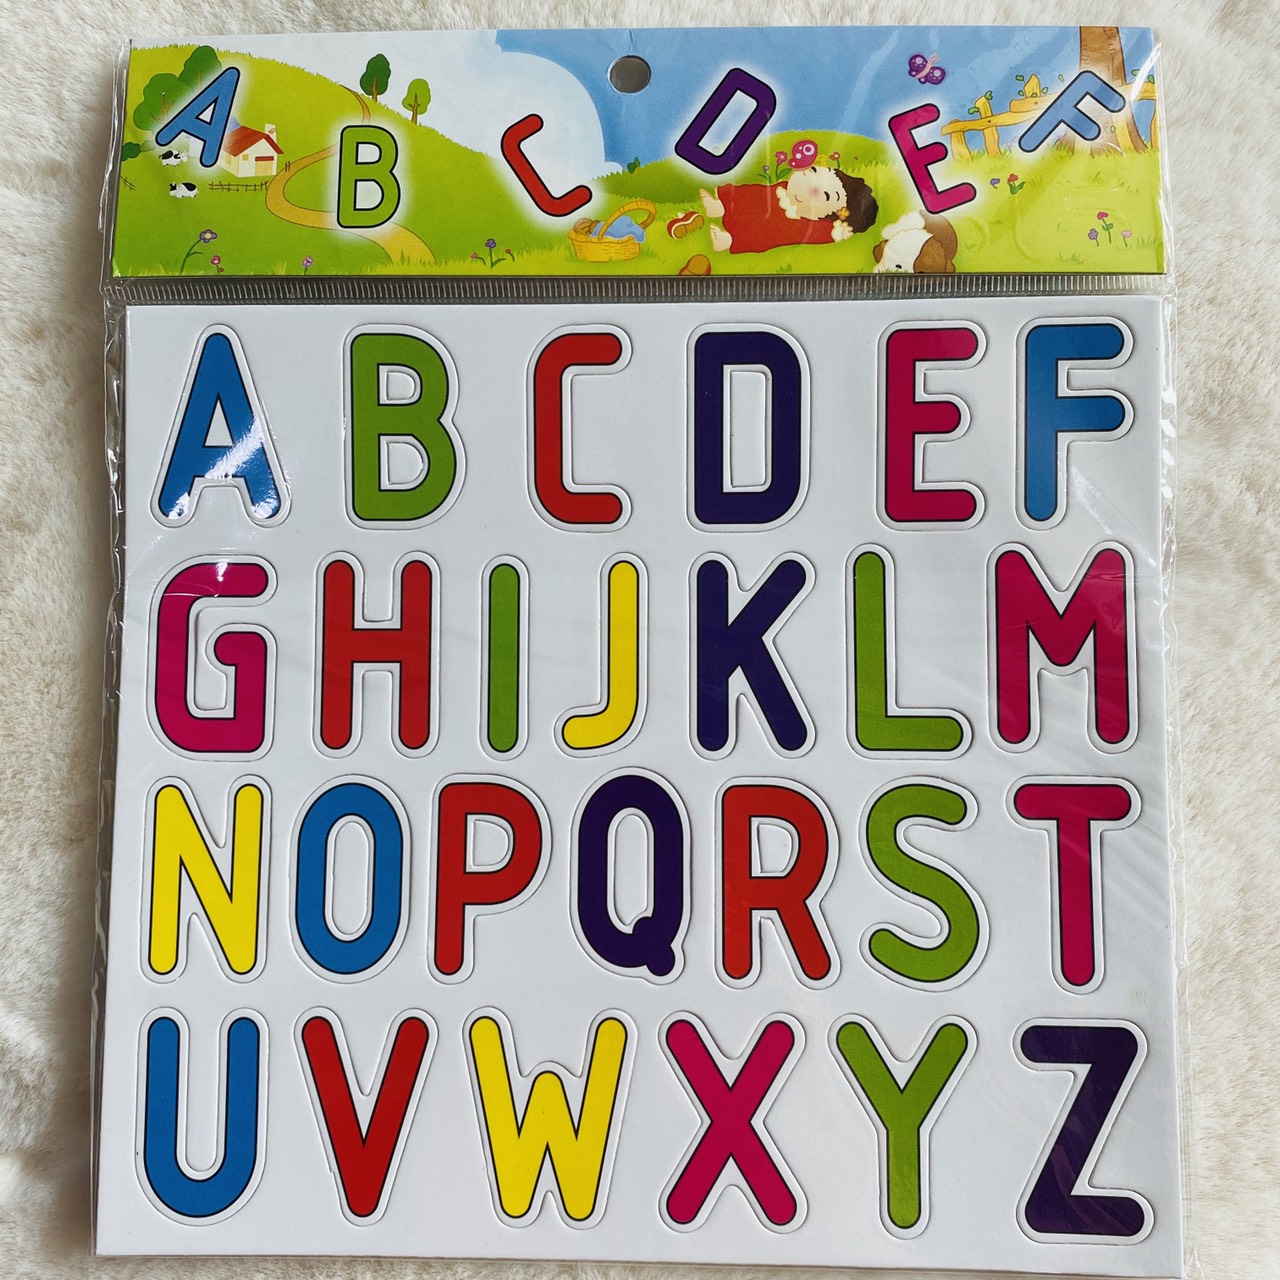 แม่เหล็ก รูปตัวอักษร ABC และตัวเลข แม่เหล็กจิ๊กซอว์ ของเล่นเพื่อการศึกษา ช่วยส่งเสริมจินตนาการให้เด็ก พร้อมส่ง ส่งของไว